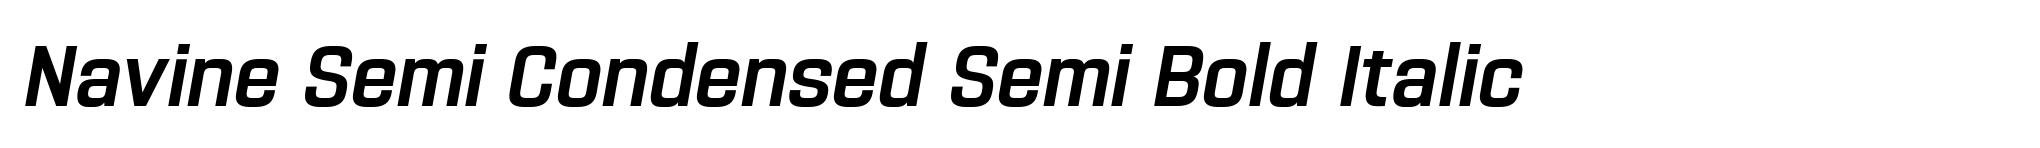 Navine Semi Condensed Semi Bold Italic image